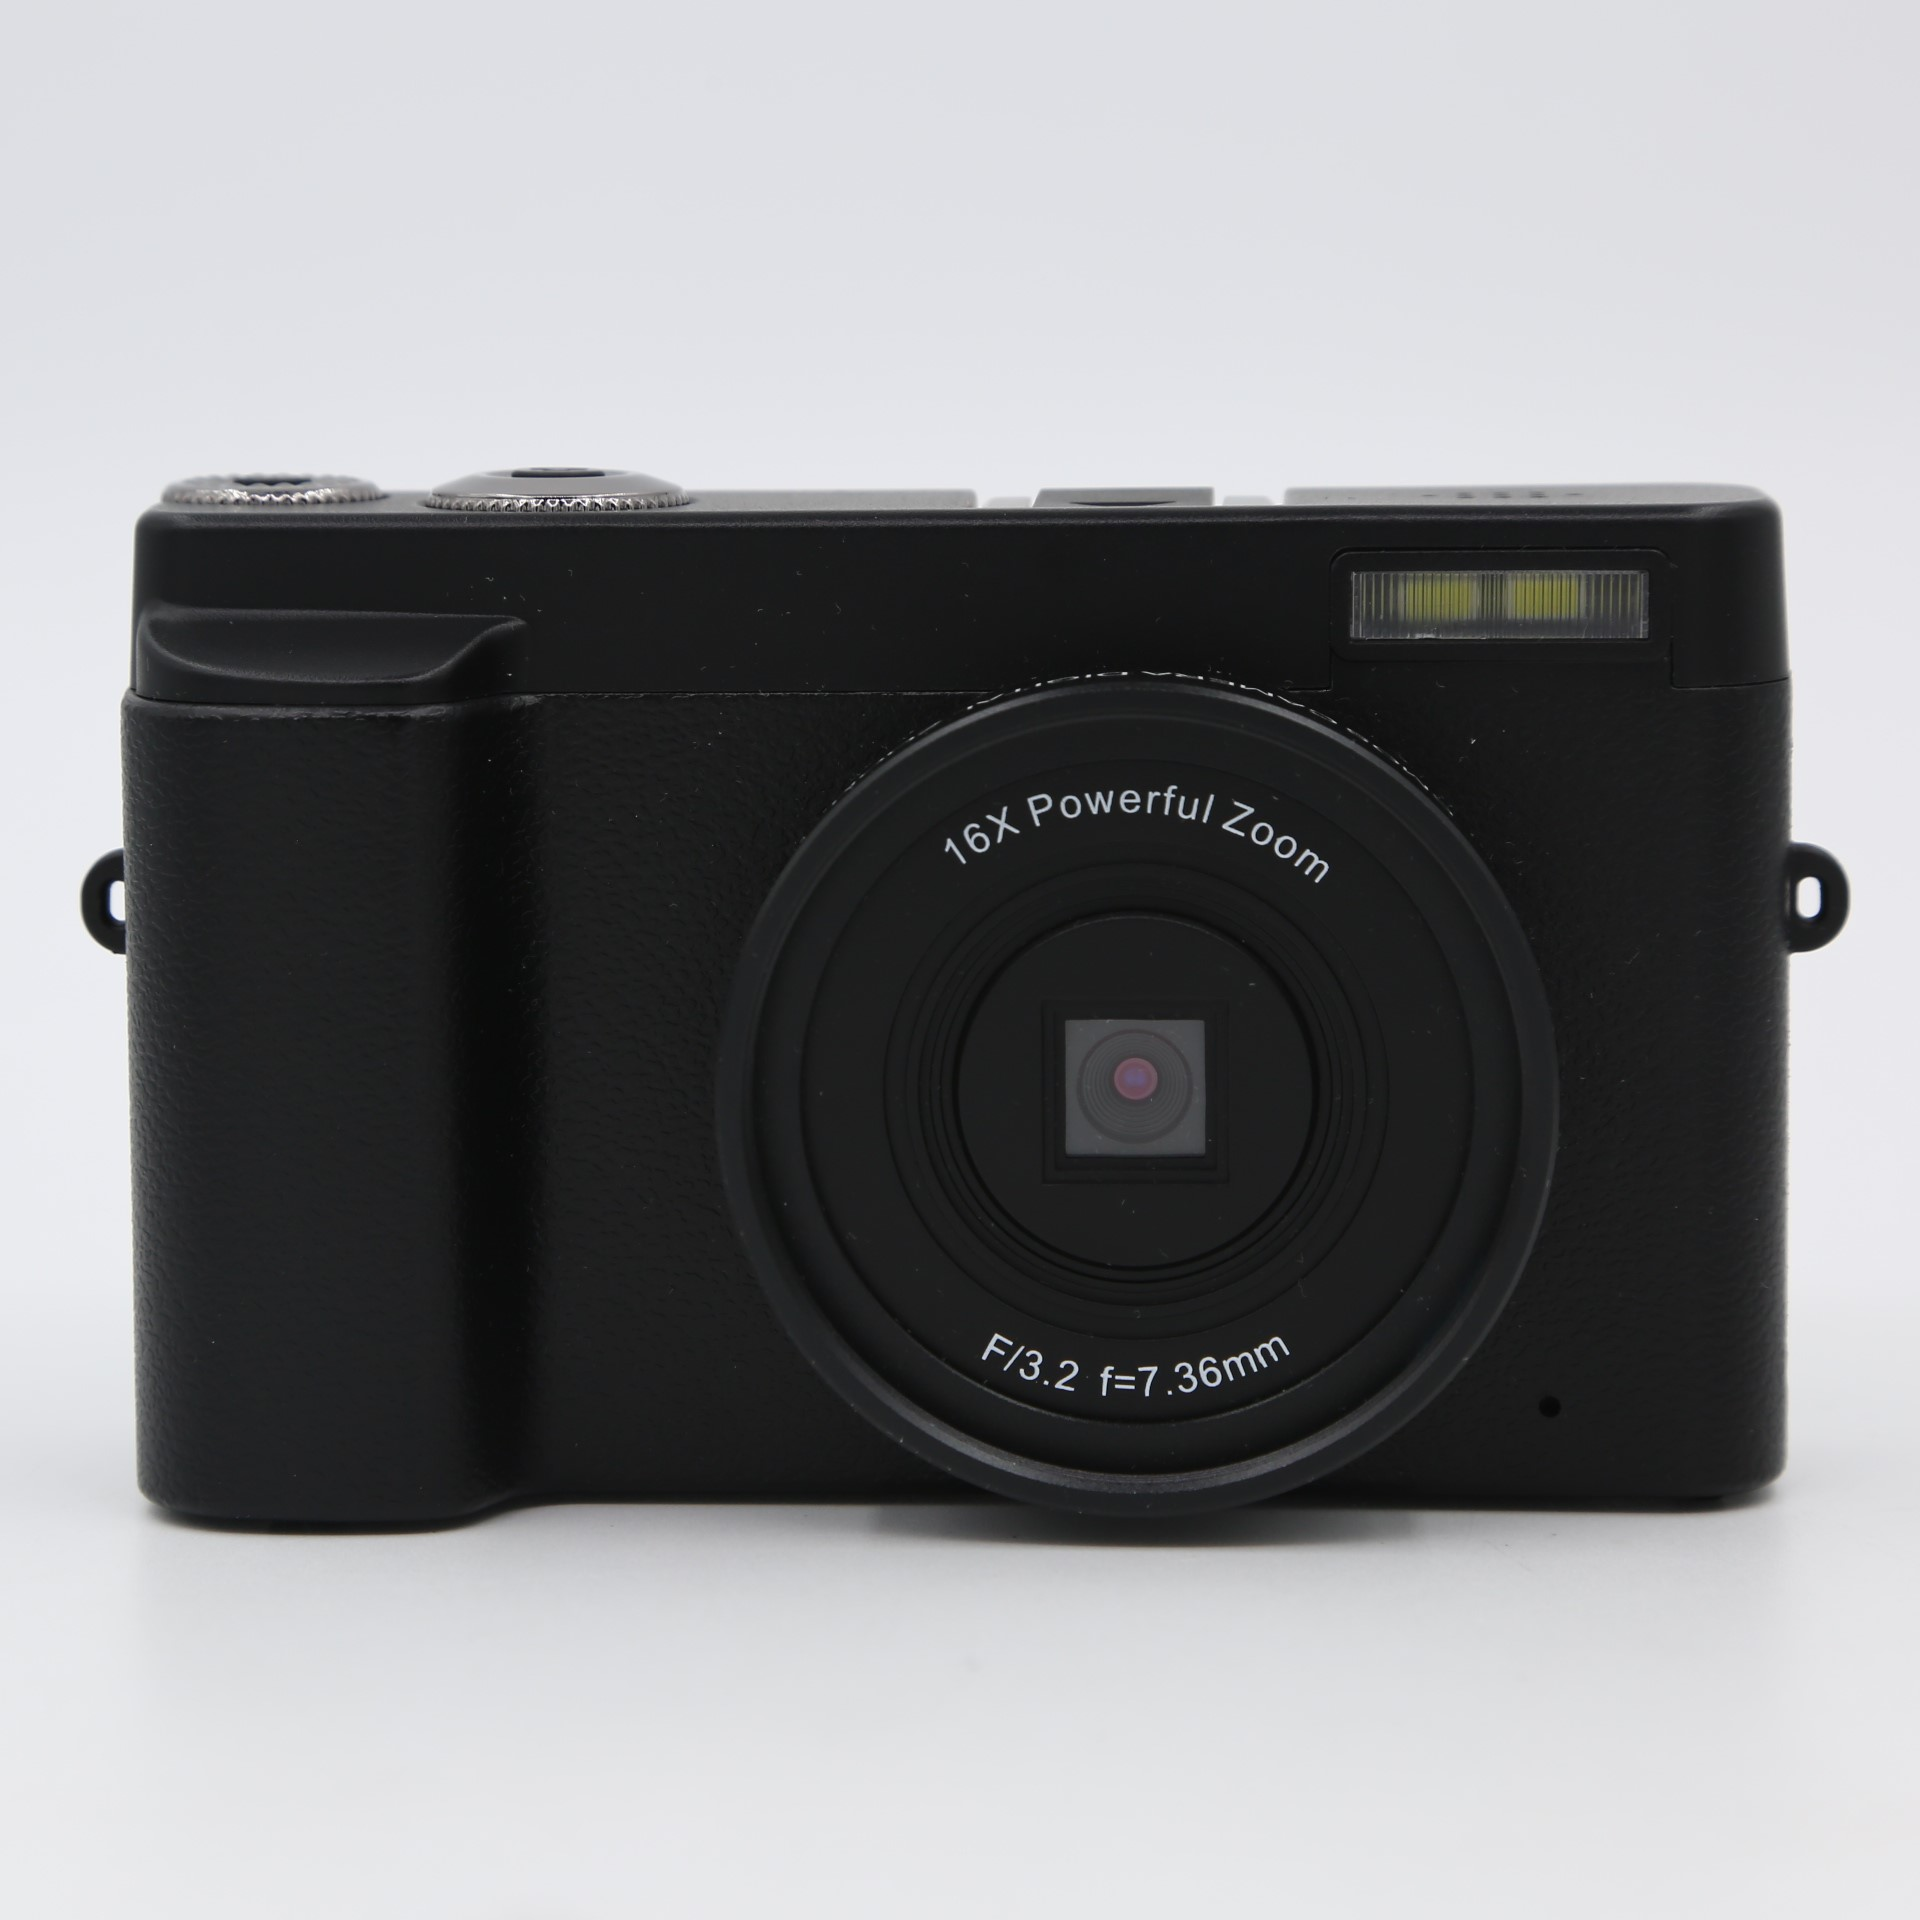 und 24 Zoom MP, HD INF 16x Digitalkamera schwarz mit Digitalkamera 1080p